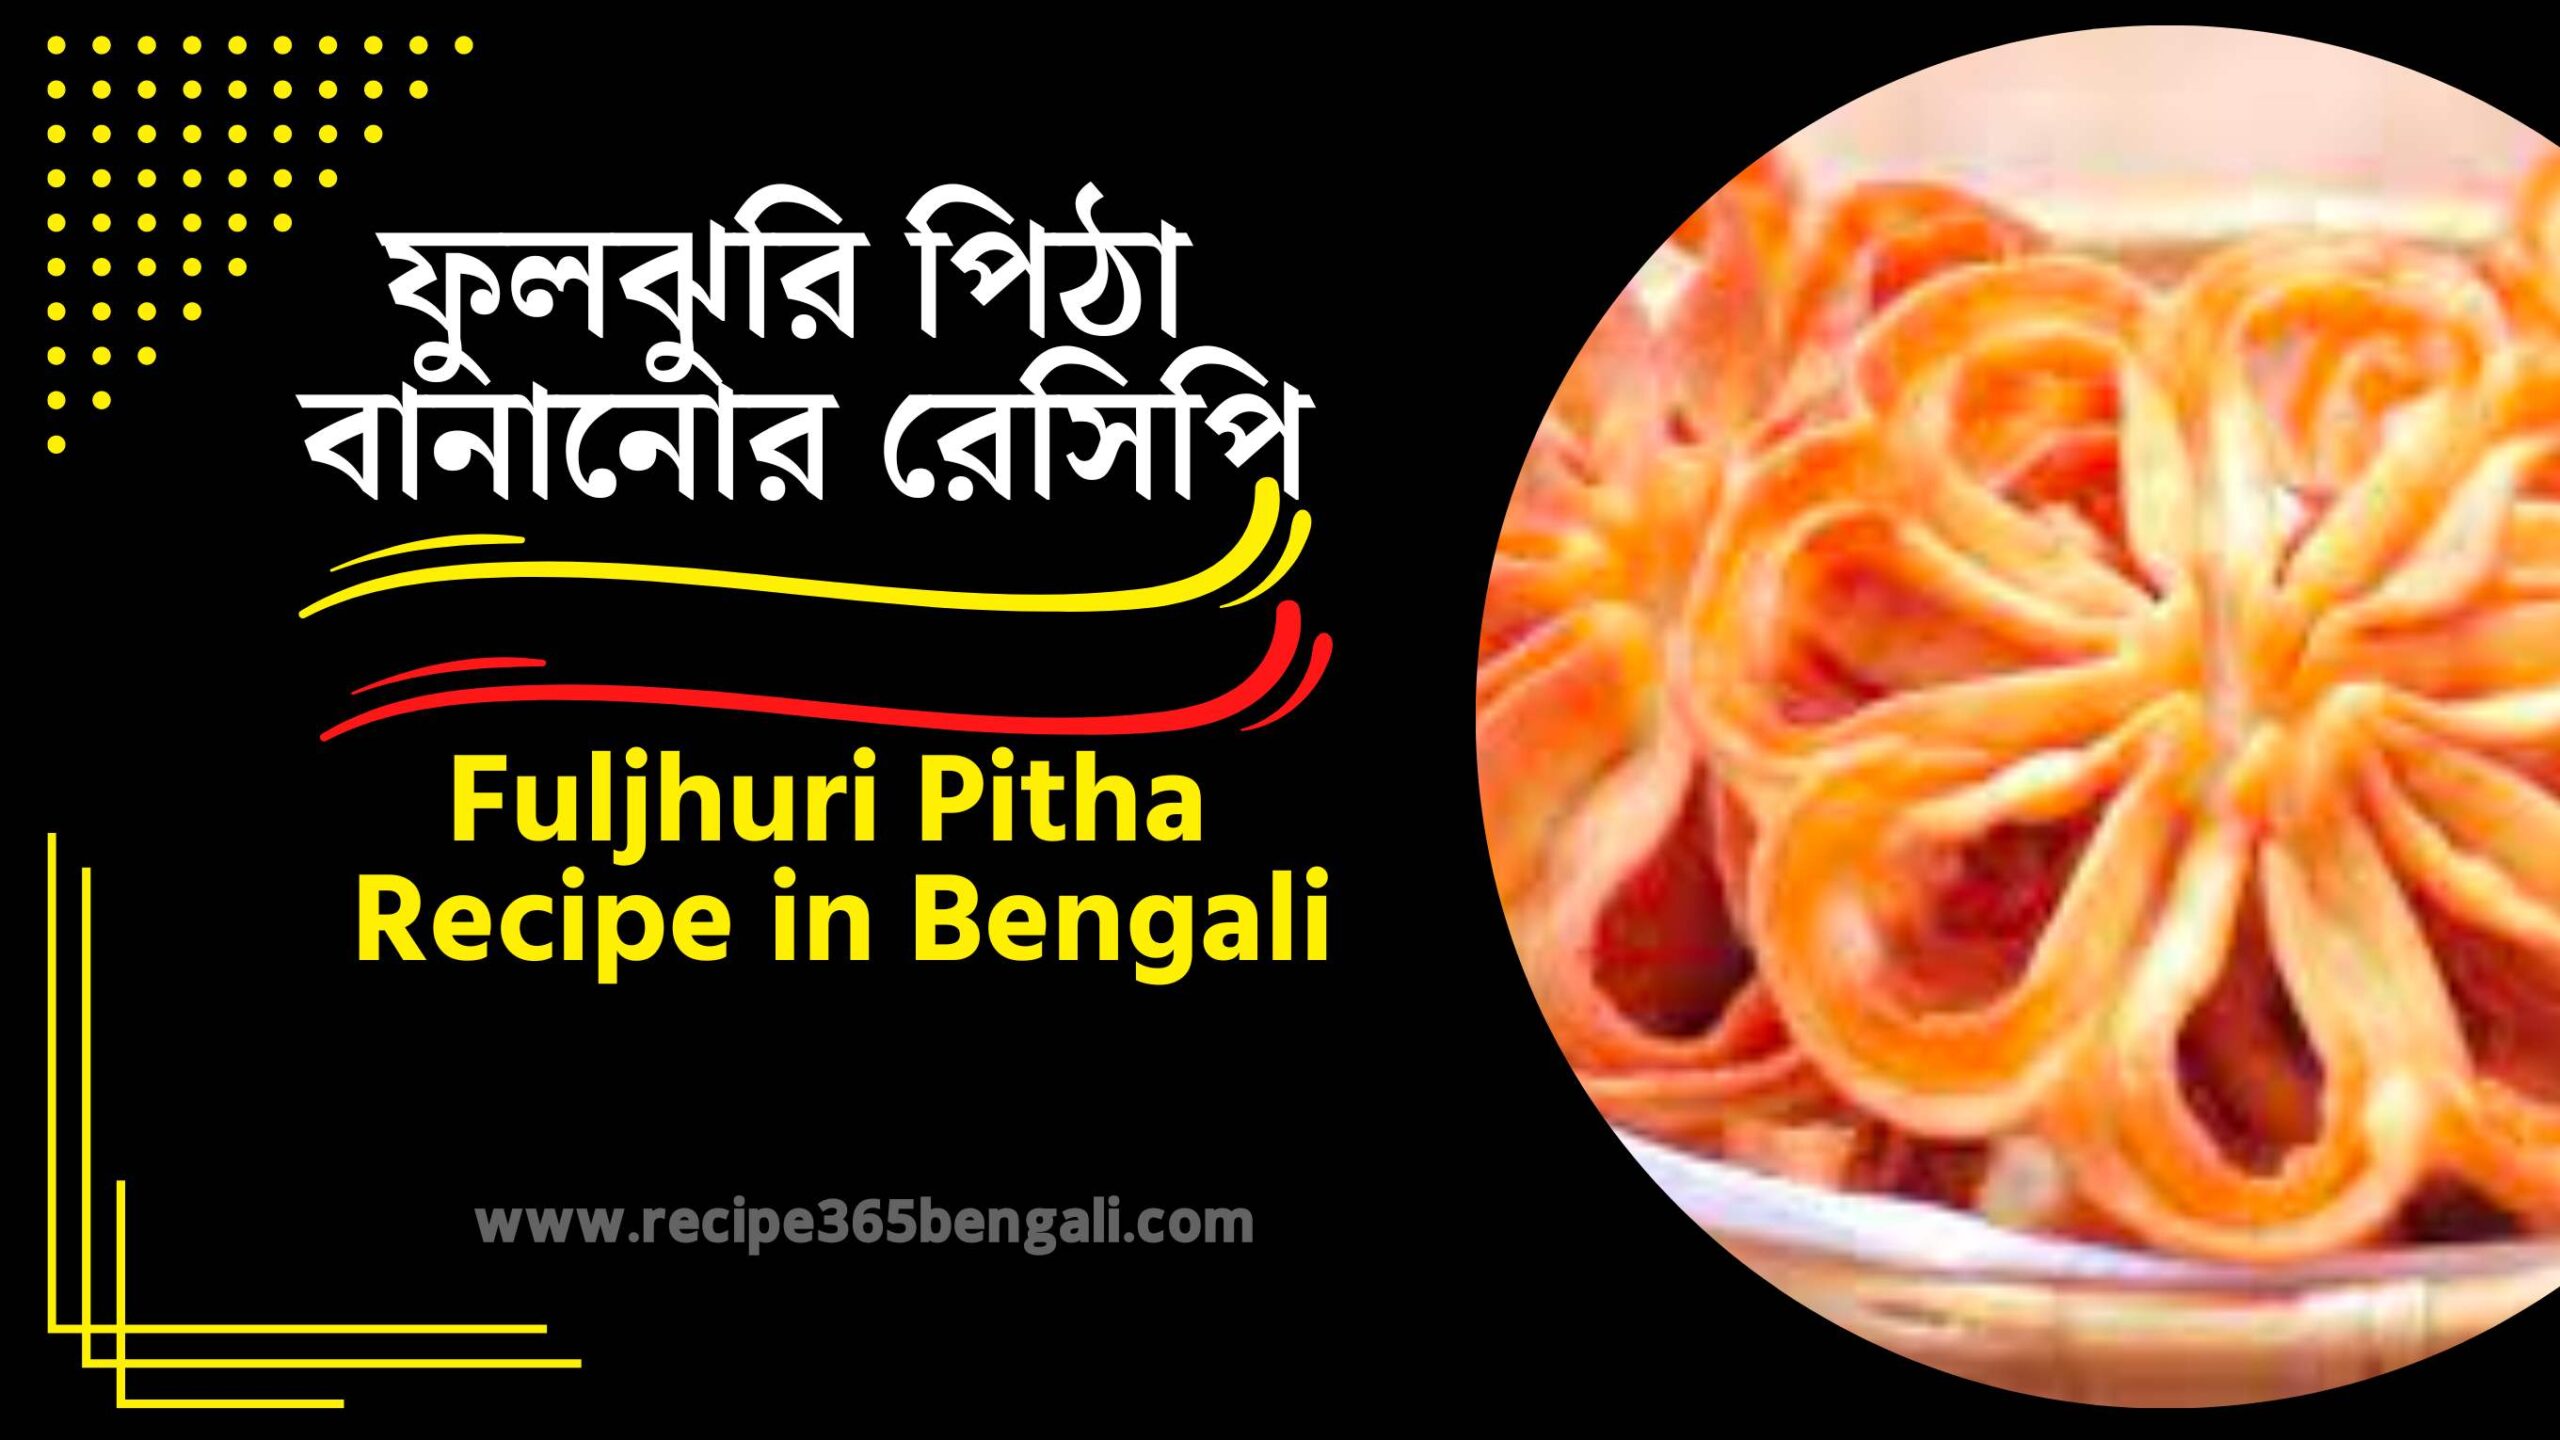 Fuljhuri Pitha Recipe in Bengali (1)